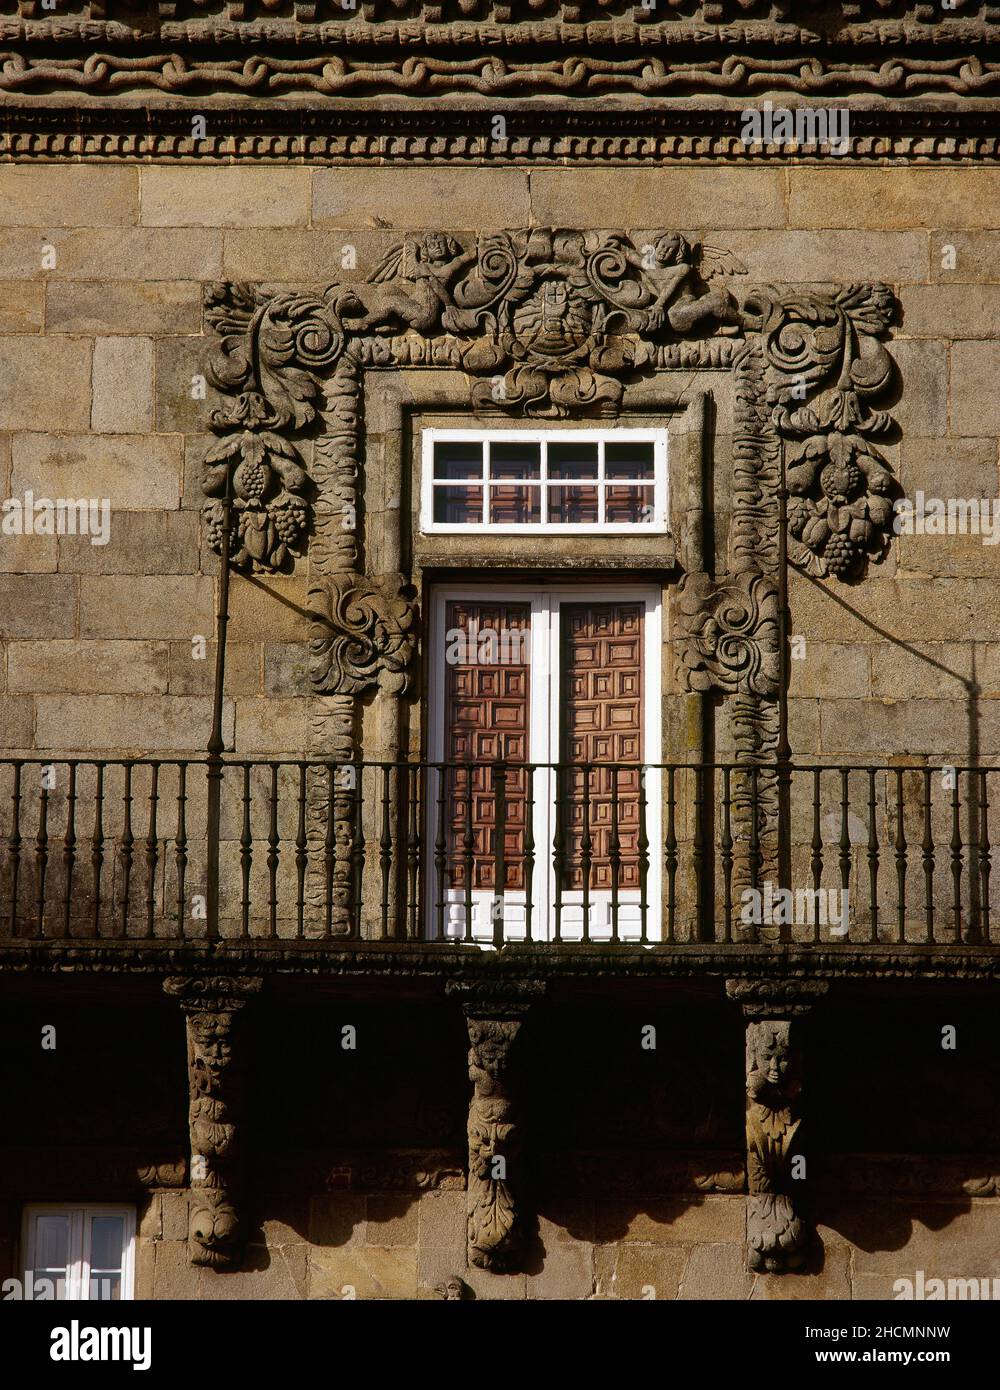 Spanien, Galizien, Provinz Coruña, Santiago de Compostela. Hostal de Los Reyes Católicos (Catholic Monarchs Hostel). Das ehemalige königliche Krankenhaus, das 1501 von den katholischen Königen erbaut wurde, um Kranke und Pilger auf dem Weg nach Compostela zu versorgen. Detail eines der Balkone an der Hauptfassade, entworfen vom Benediktiner-Mönch Tomás Alonso, mit dem Fenster, das von skulpturalen Reliefs mit Trauben (17th. Jahrhundert) eingerahmt wird. Stockfoto